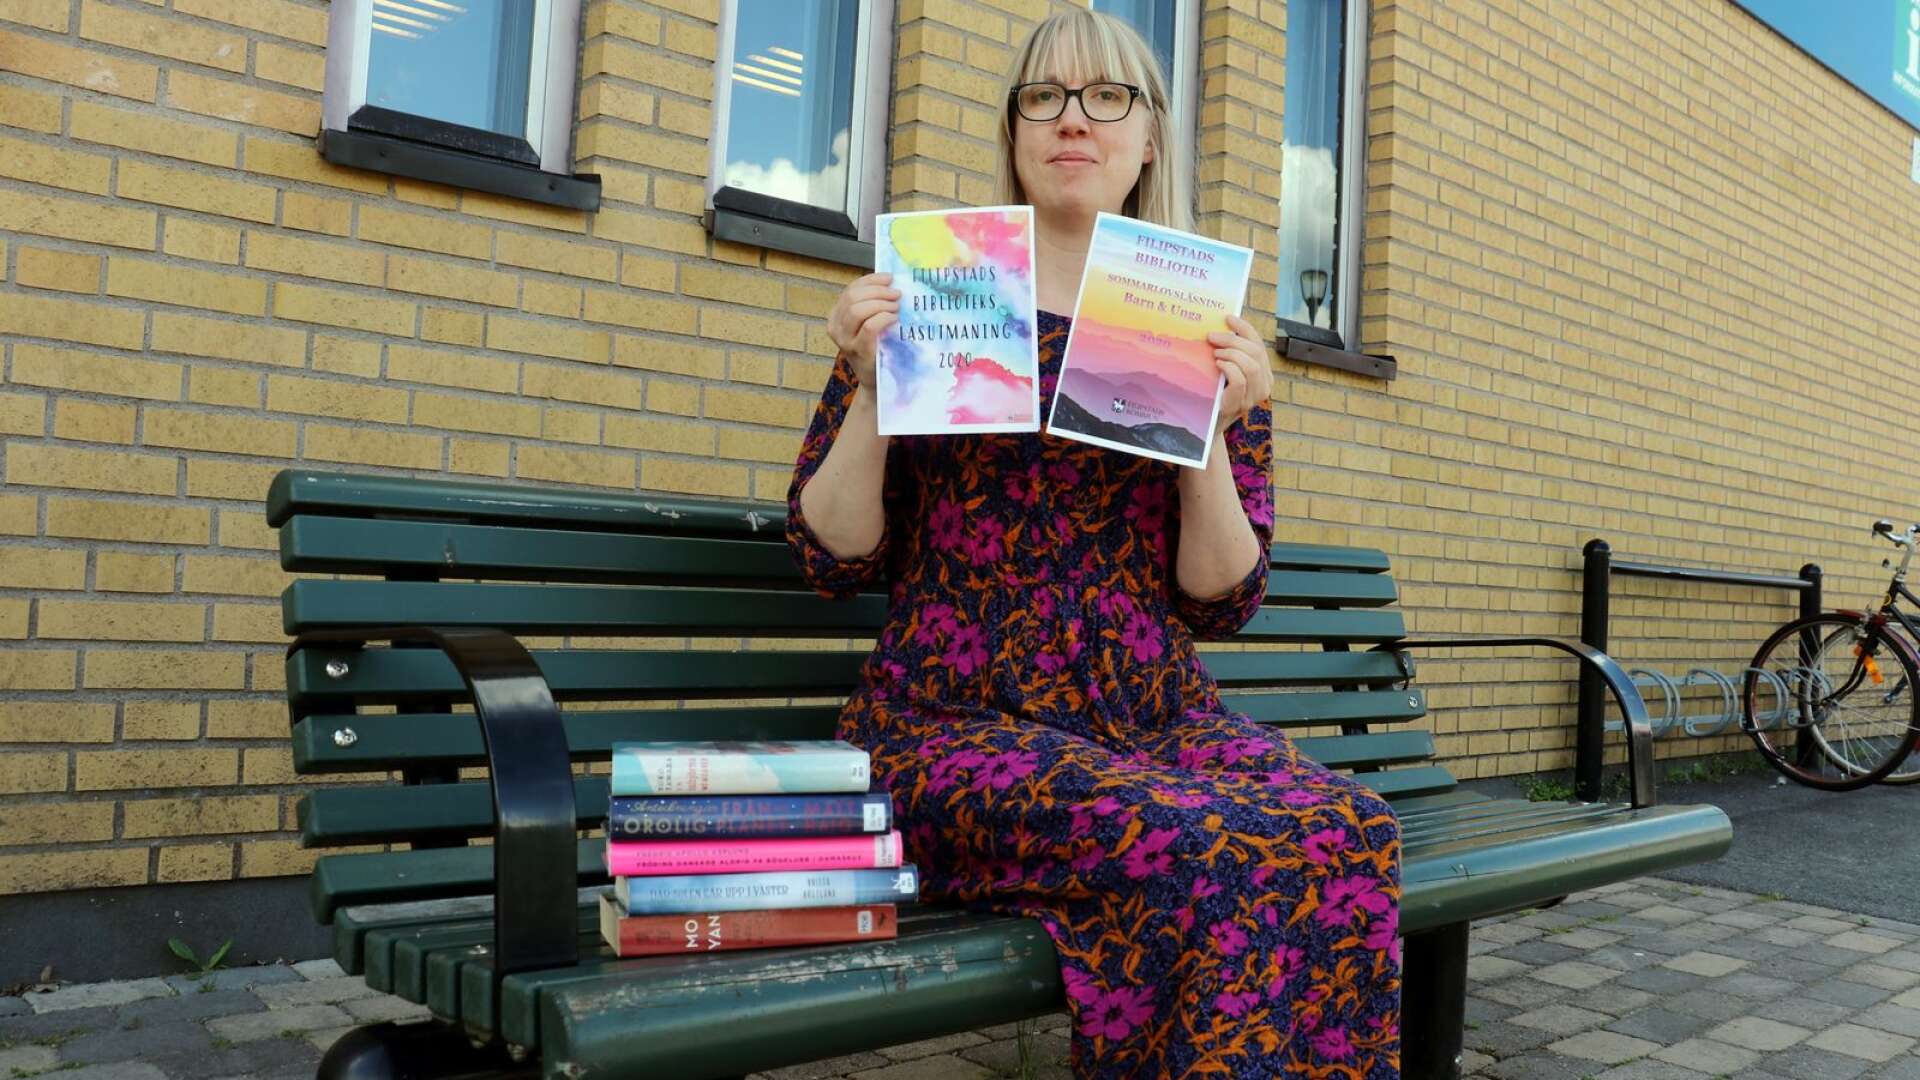 Sommar är en tid för läsning - många lånar böcker innan de går på semester, berättar Sara Urger, bibliotekarie. Nu drar Filipstads bibliotek igång sommarens läsutmaning för vuxna och sommarlovsläsning för barn och ungdomar.